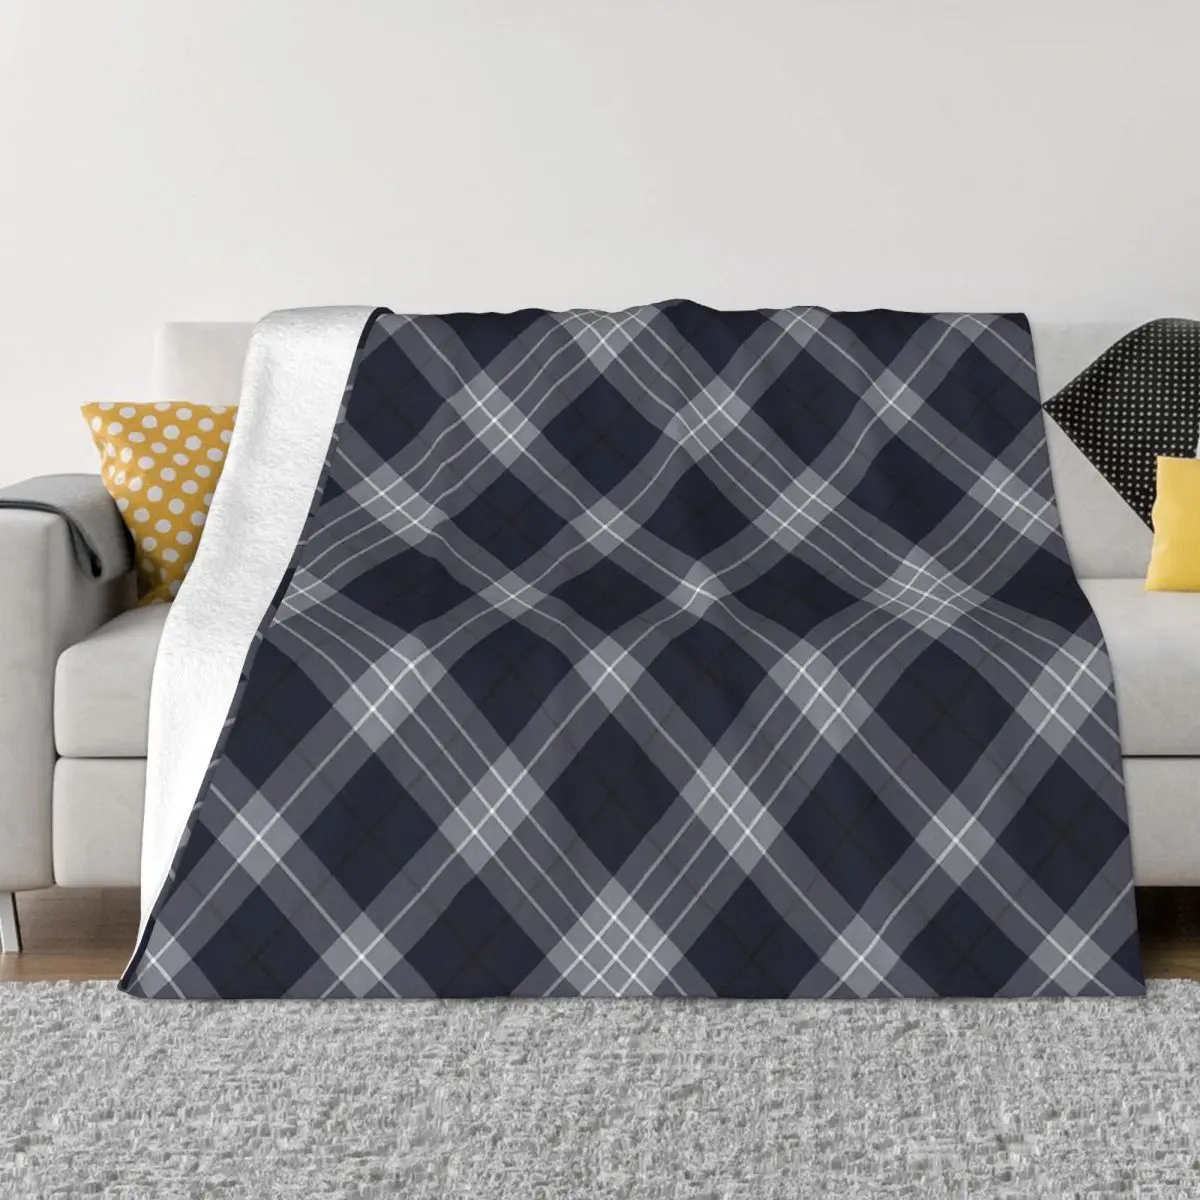 

Plaid Art Blanket Flannel Elderberry Cross Tartan Twill Pattern Cozy Soft FLeece Bedspread